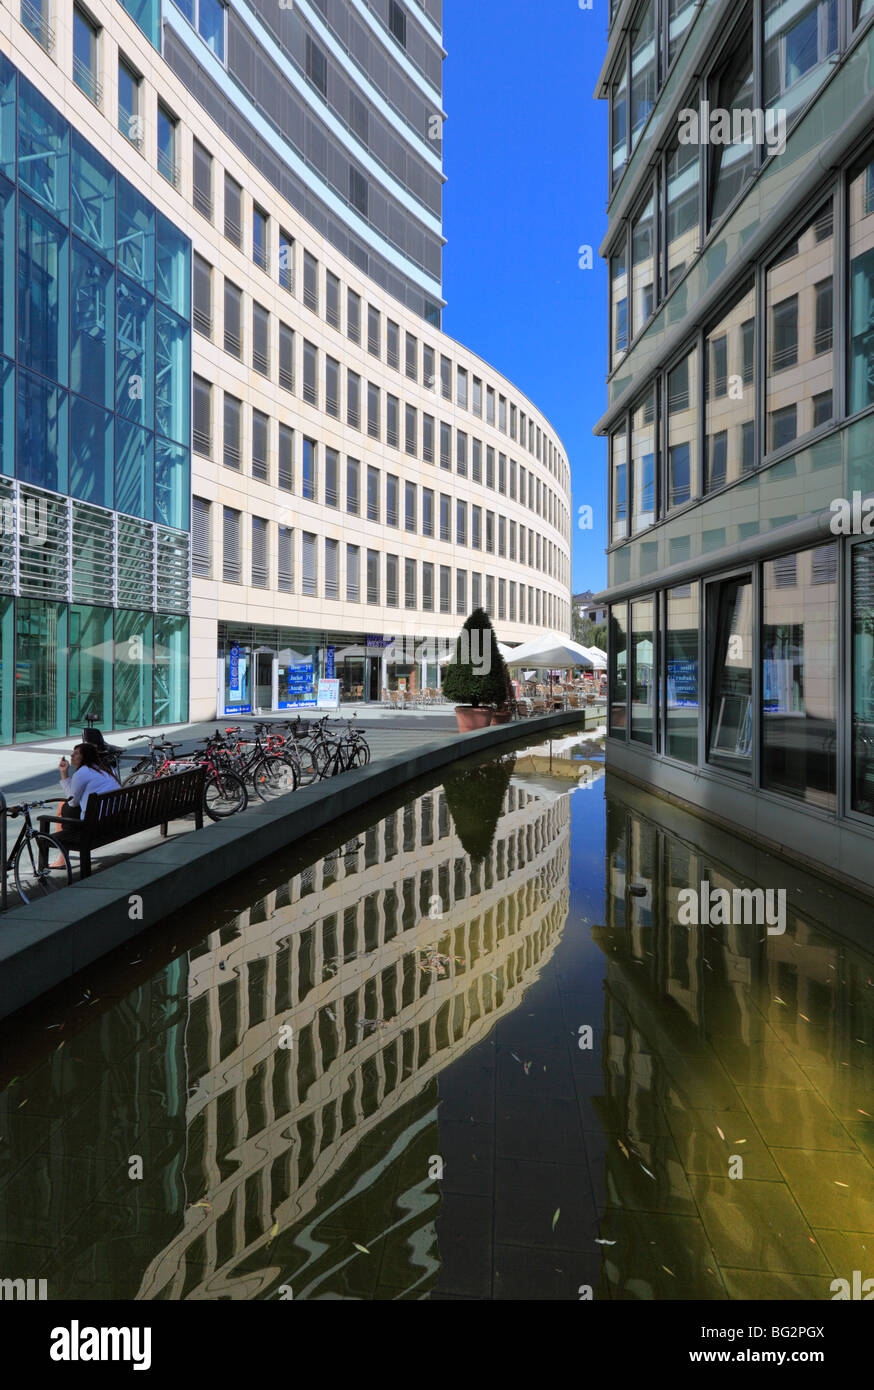 Die Welle (la ola) ubicado en Frankfurt, Alemania. Un popular complejo de oficinas cerca de la ciudad central con terrazas de los cafés y bares. Foto de stock